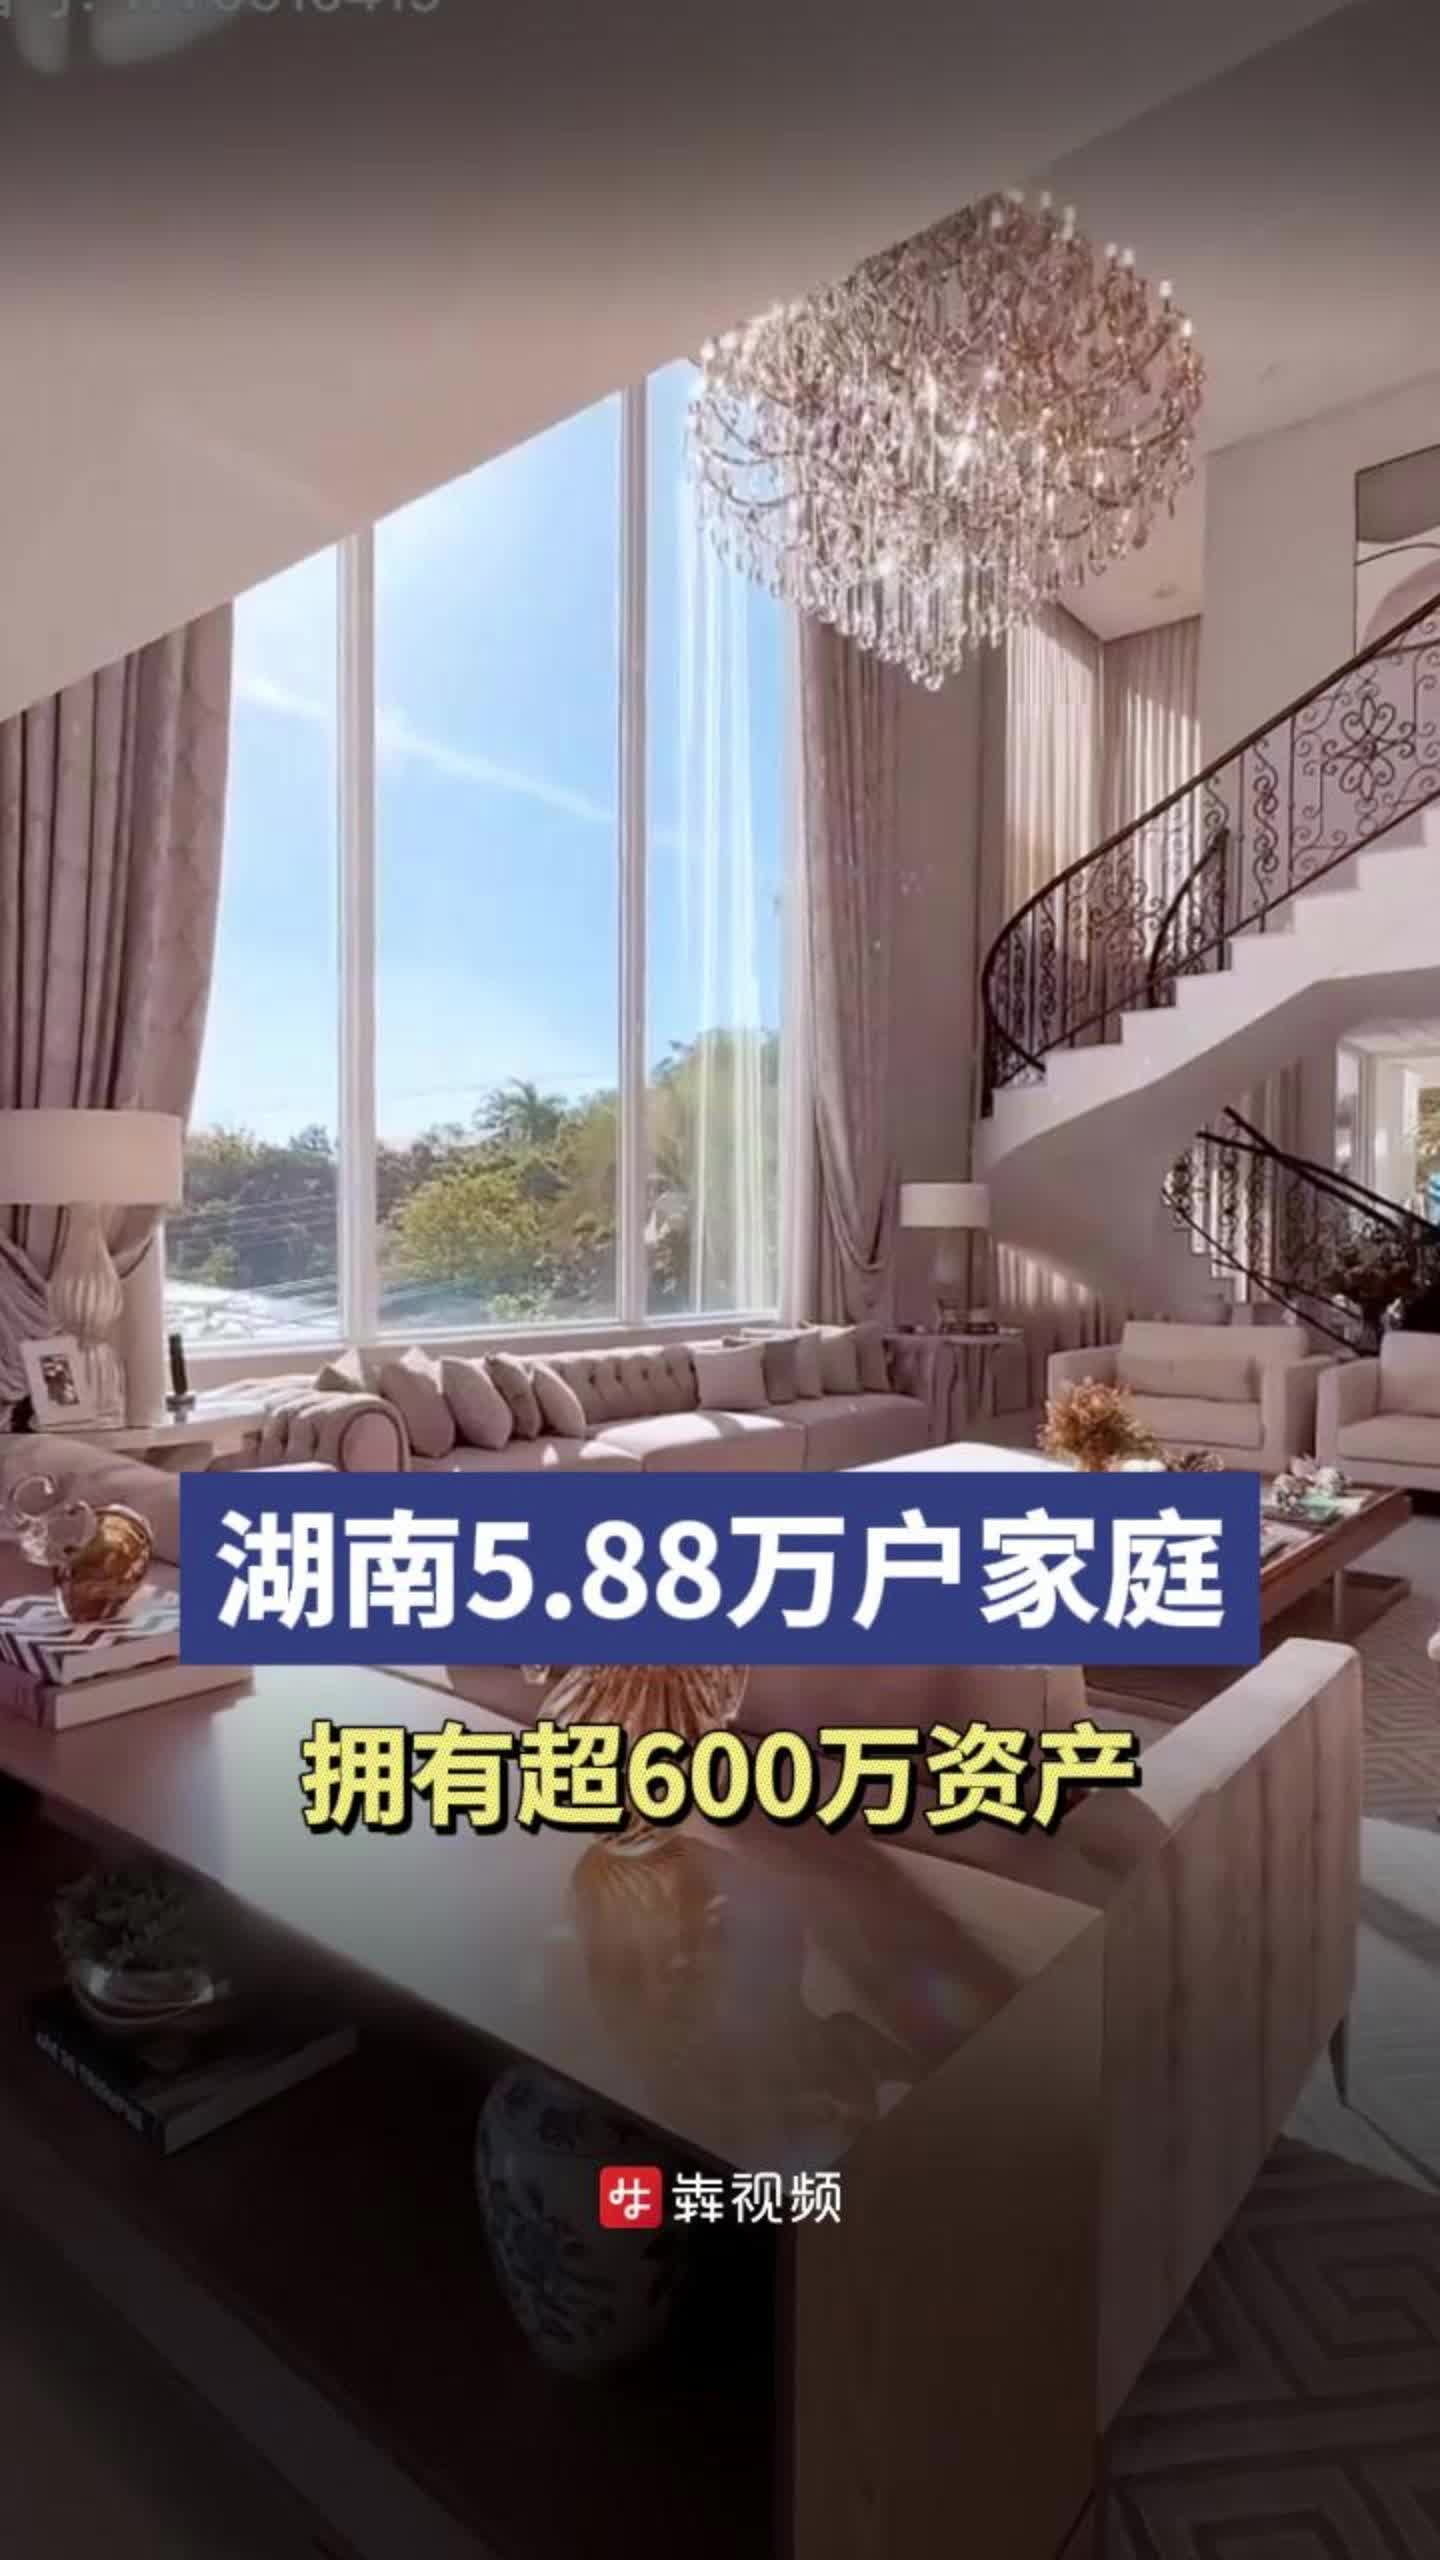 湖南5.88万户家庭拥有超600万资产